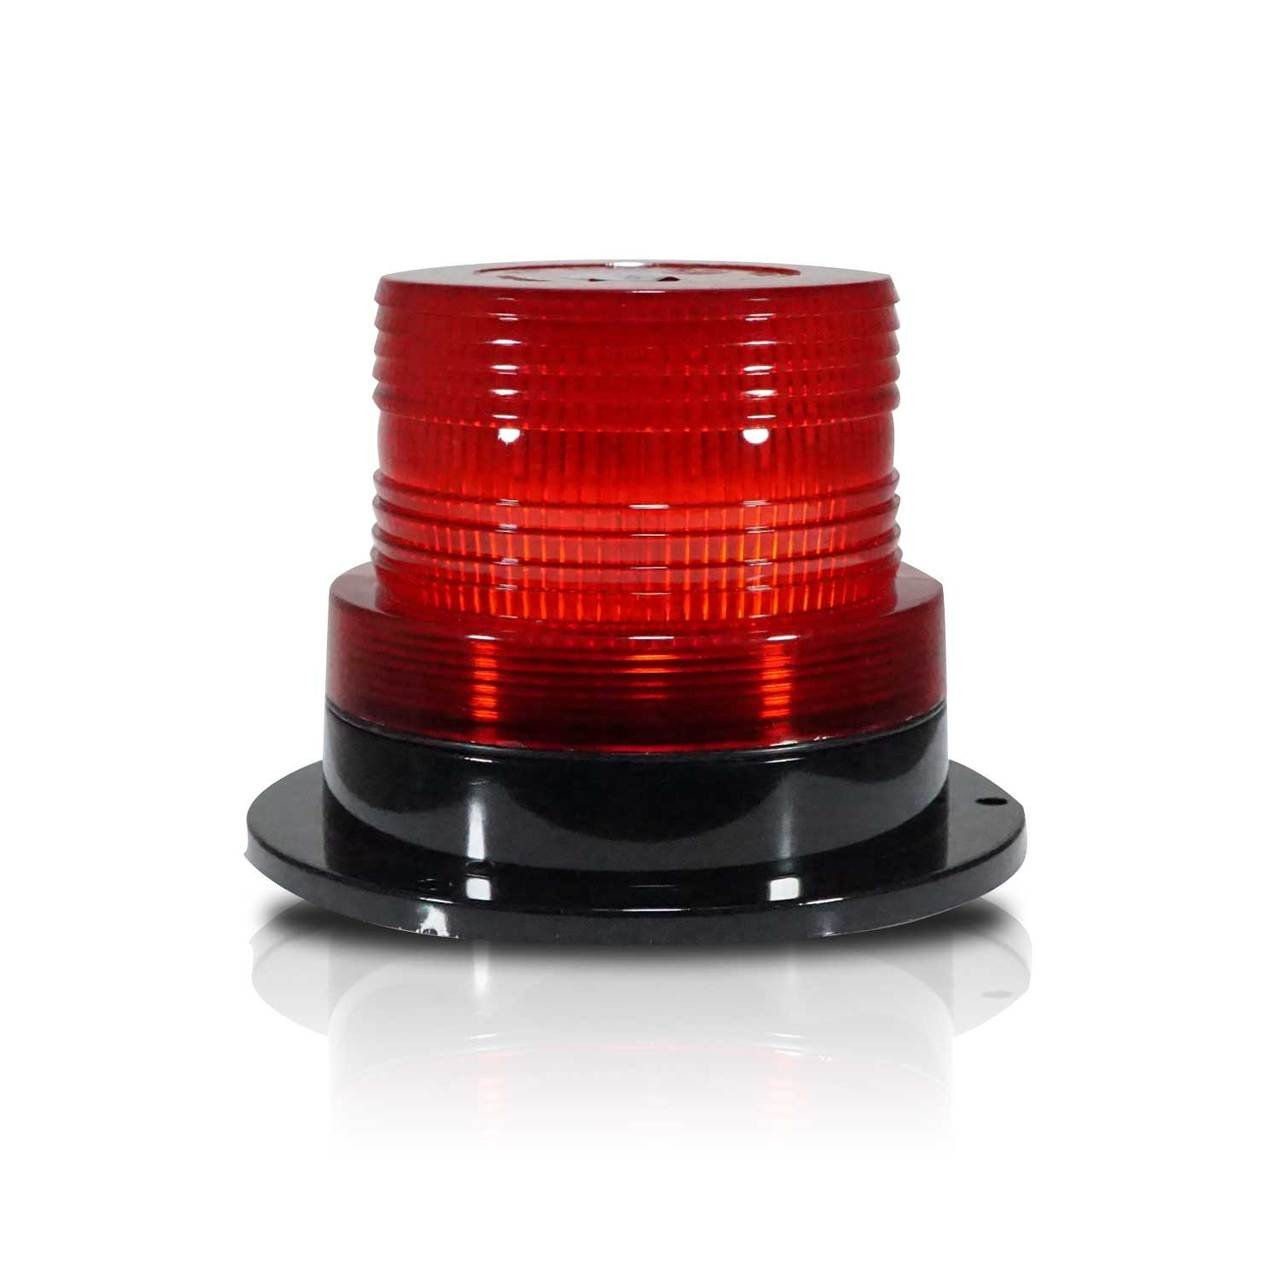 3.5-inch Revolving Warning Light Rotating Warning Light (Red)